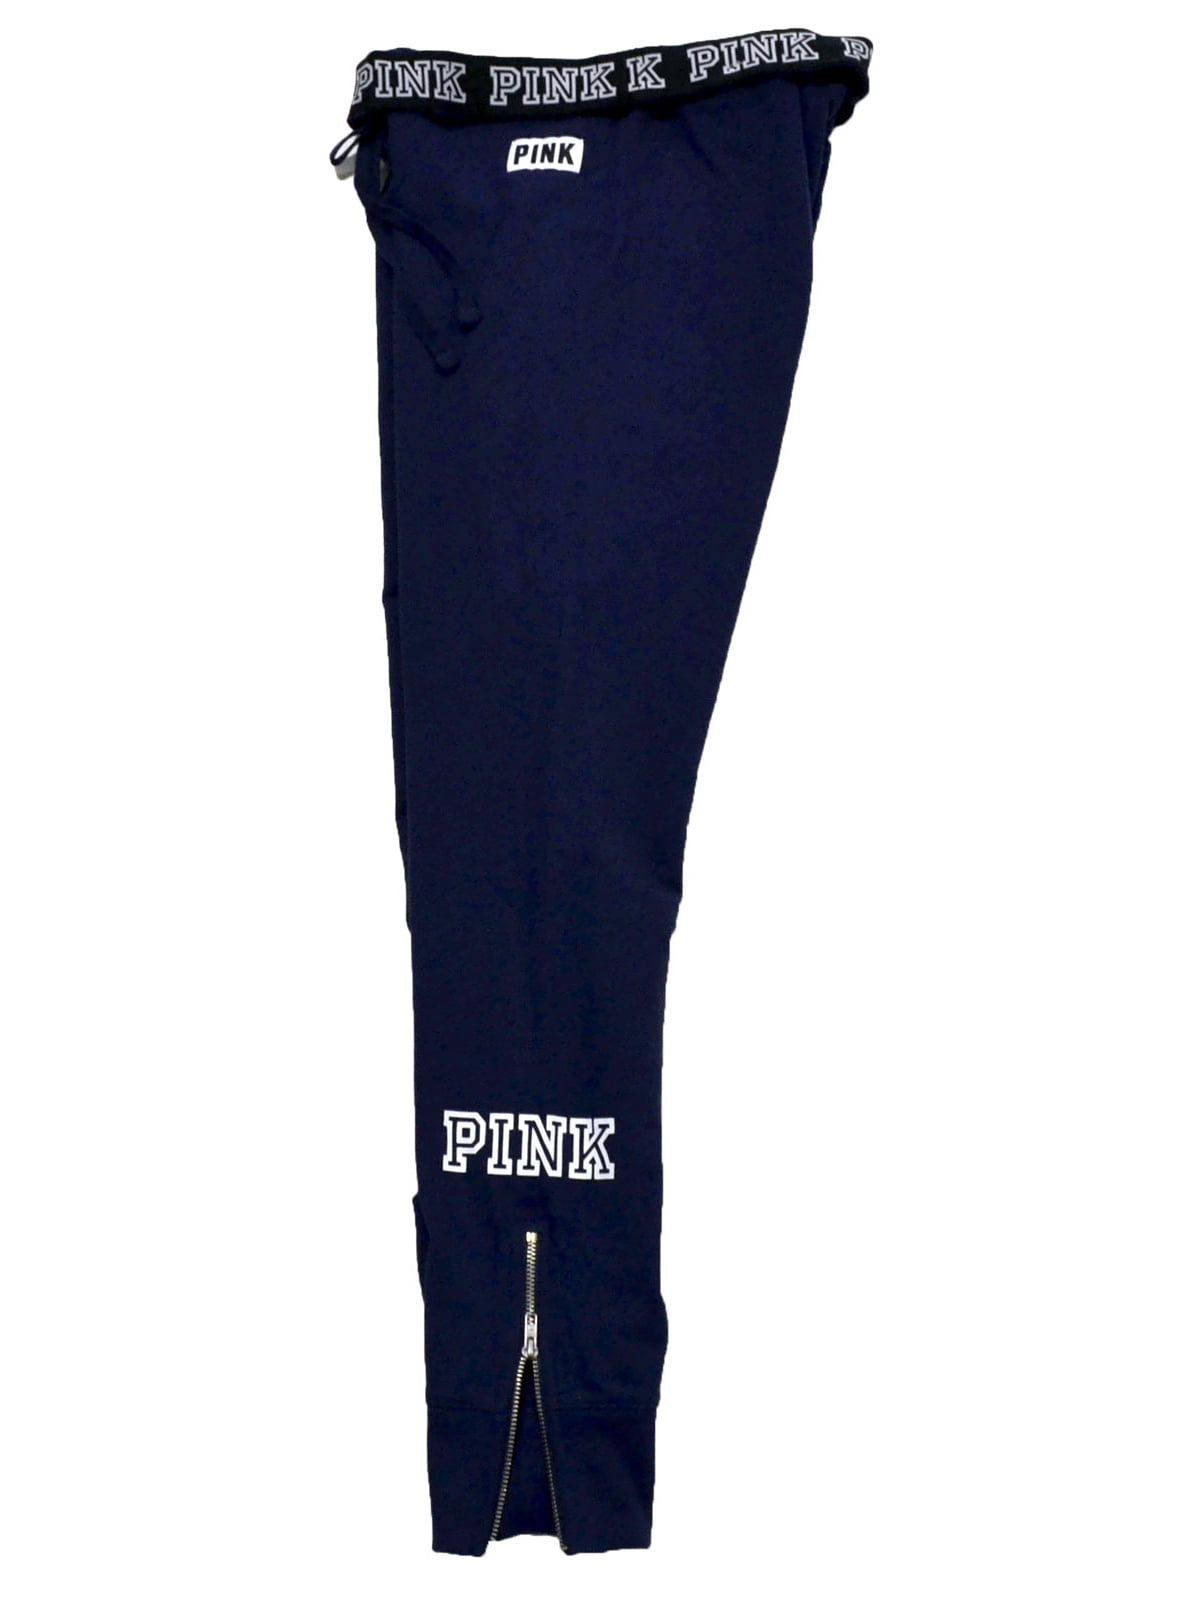 Victoria's Secret Pink Sweatpant Gym Pants (Large, Black